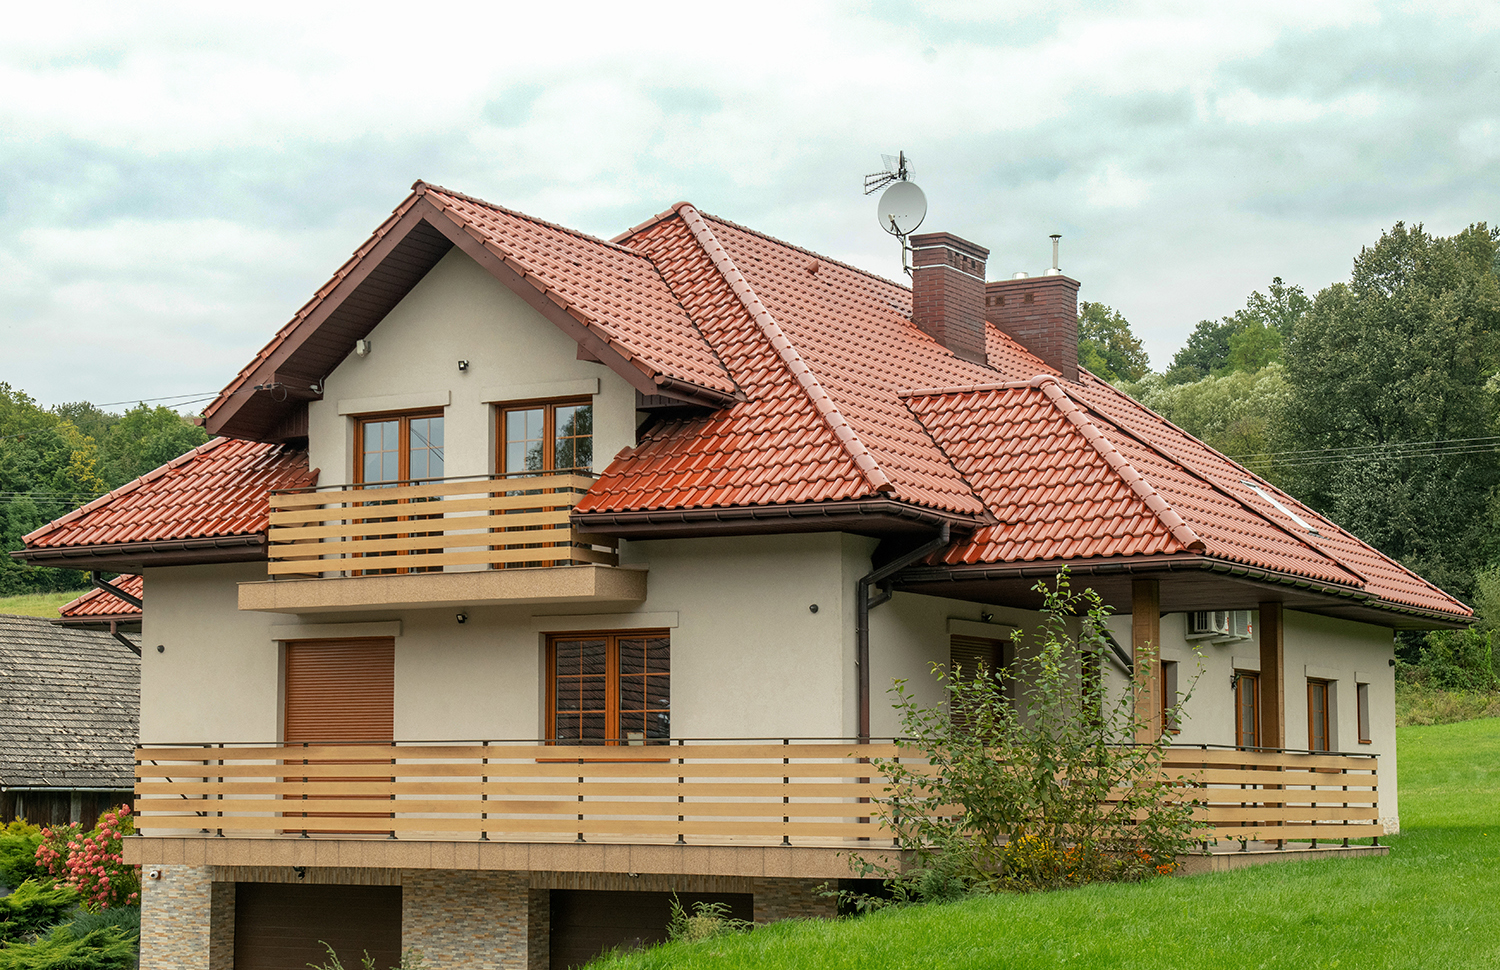 Dachówki sprawdzają się na prawie każdym rodzaju dachu i doskonale komponują się z różnym otoczeniem.  Fot. mat. prasowe Creaton